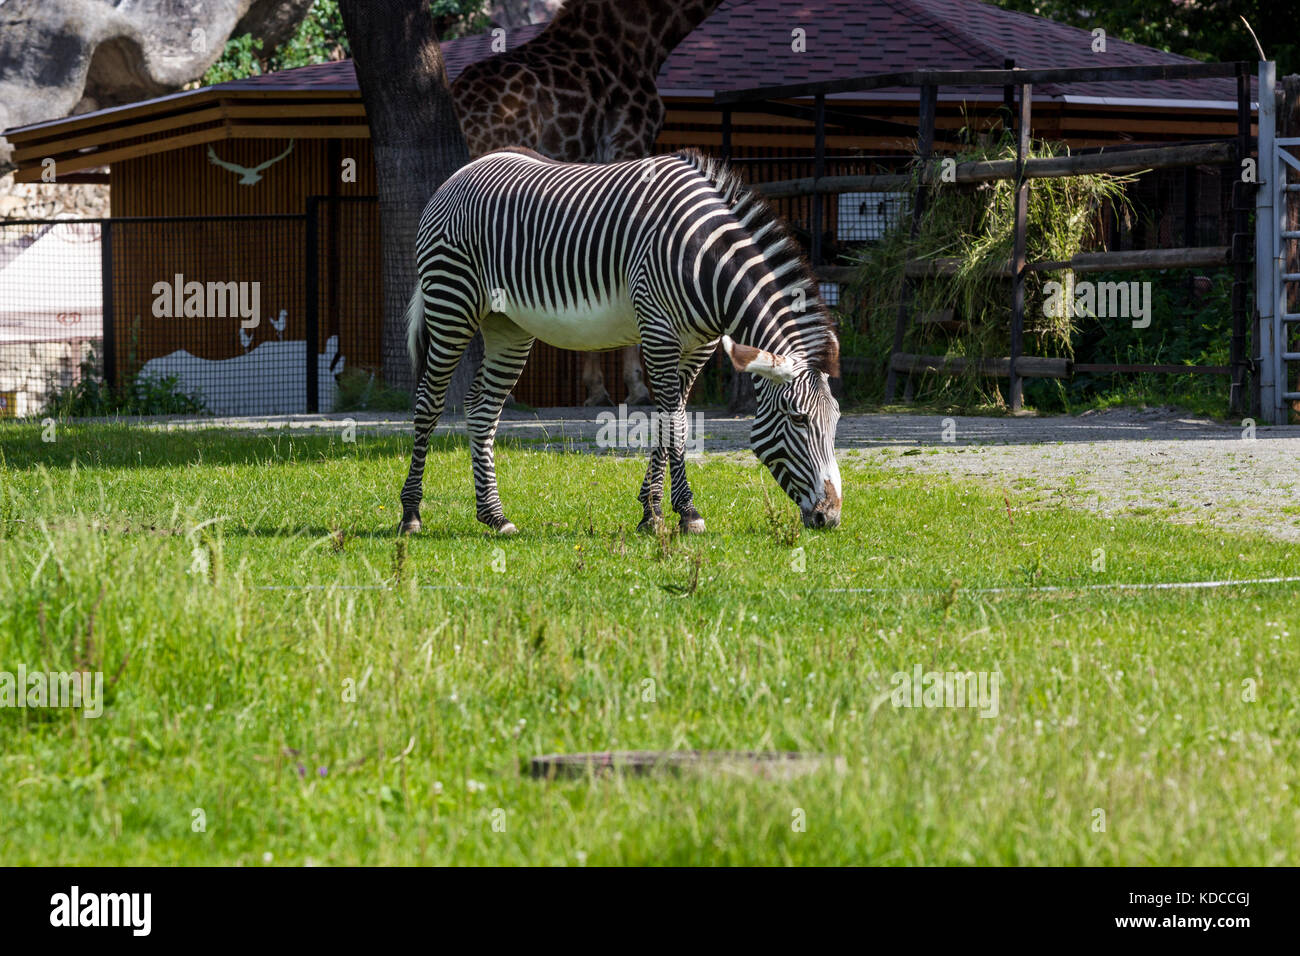 Une femelle zebra broute dans l'enceinte du zoo, sur une chaude journée d'été Banque D'Images